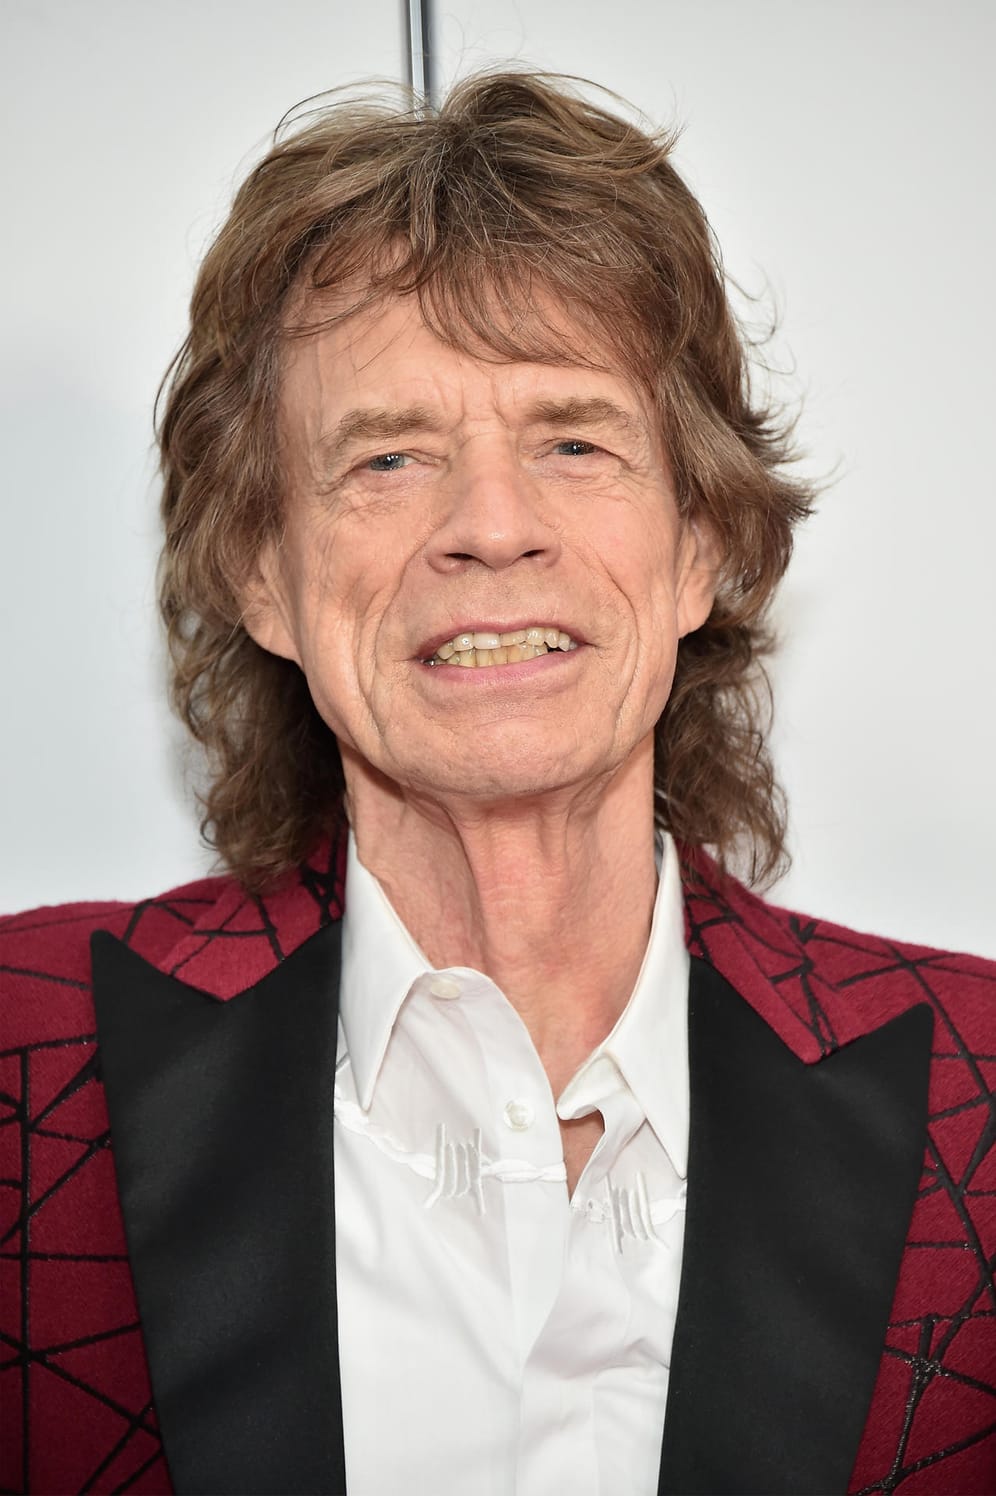 Sänger Mick Jagger: 26. Juli 1943